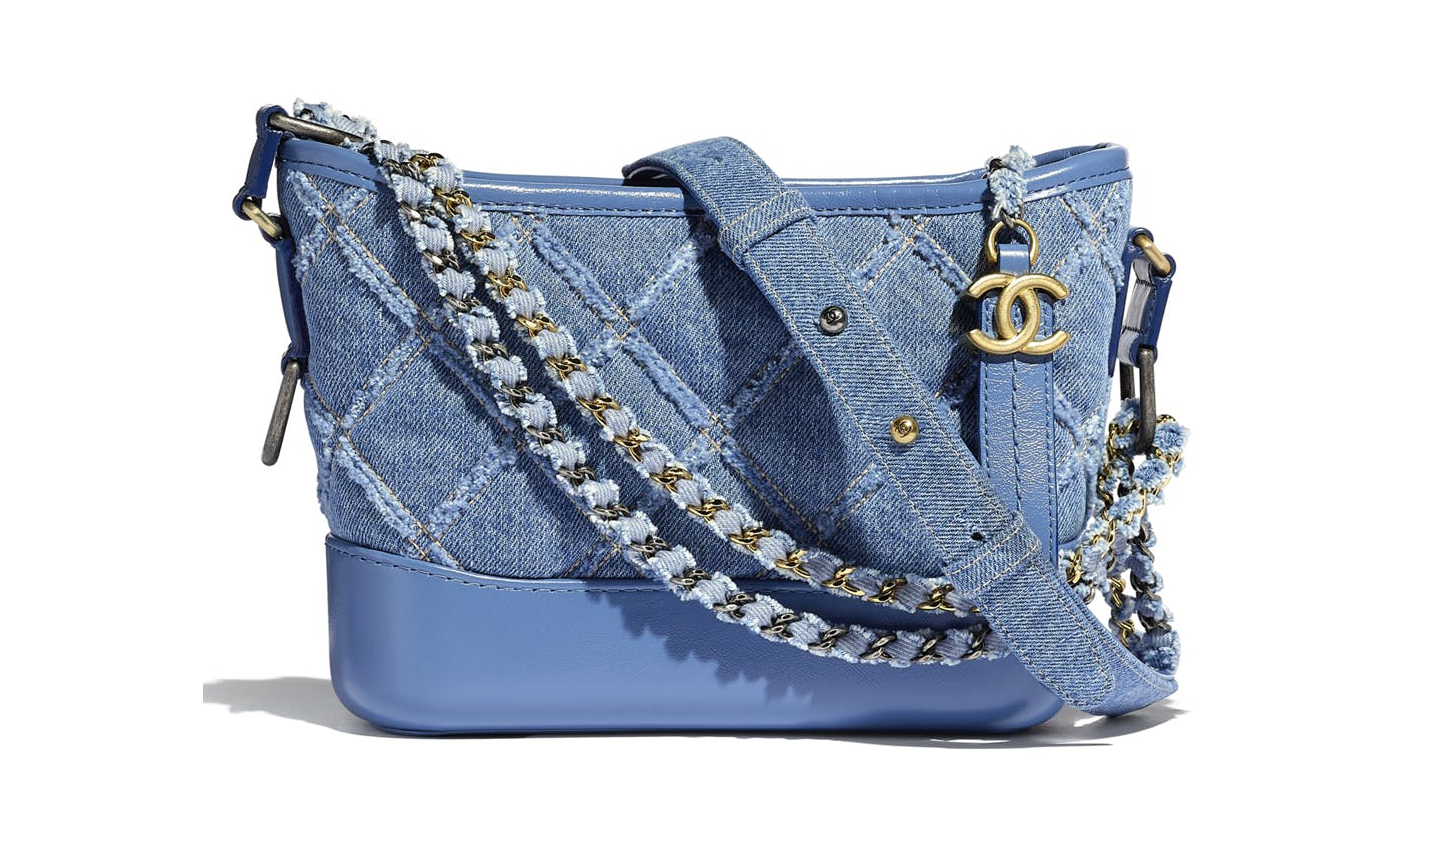 2020 春夏新款，Chanel 推出牛仔布面料的 Gabrielle Hobo 手袋